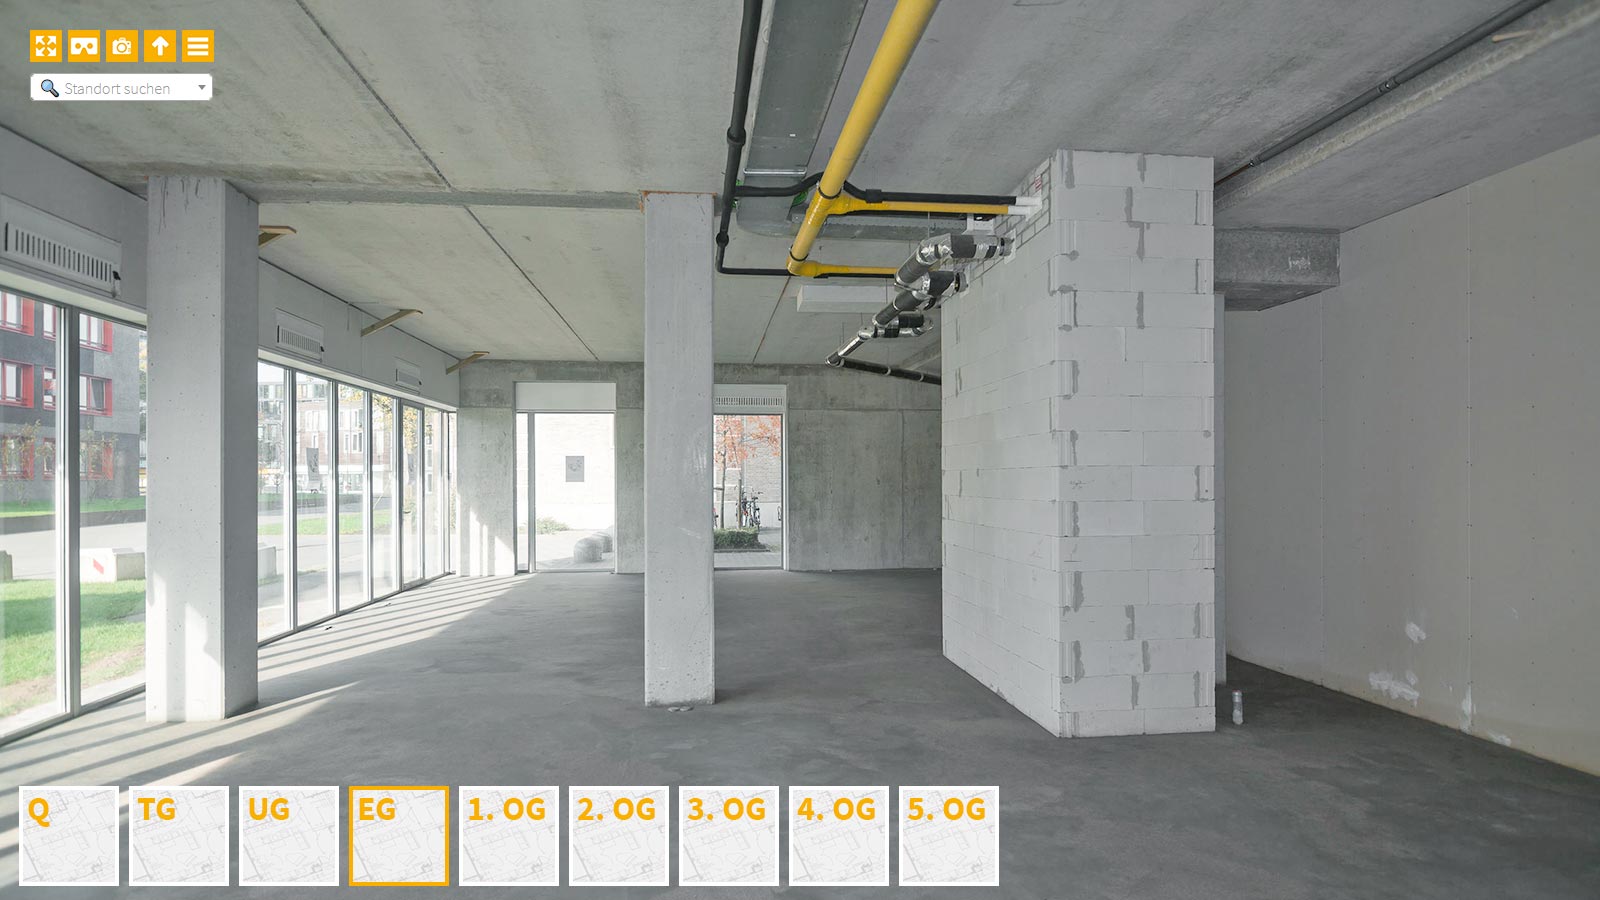 Baudokumentation 360 Grad bei gestörten Projekten in 


	


	


	


	


	


	


	


	


	


	Erlangen









, Bilddokumentation als virtueller Rundgang